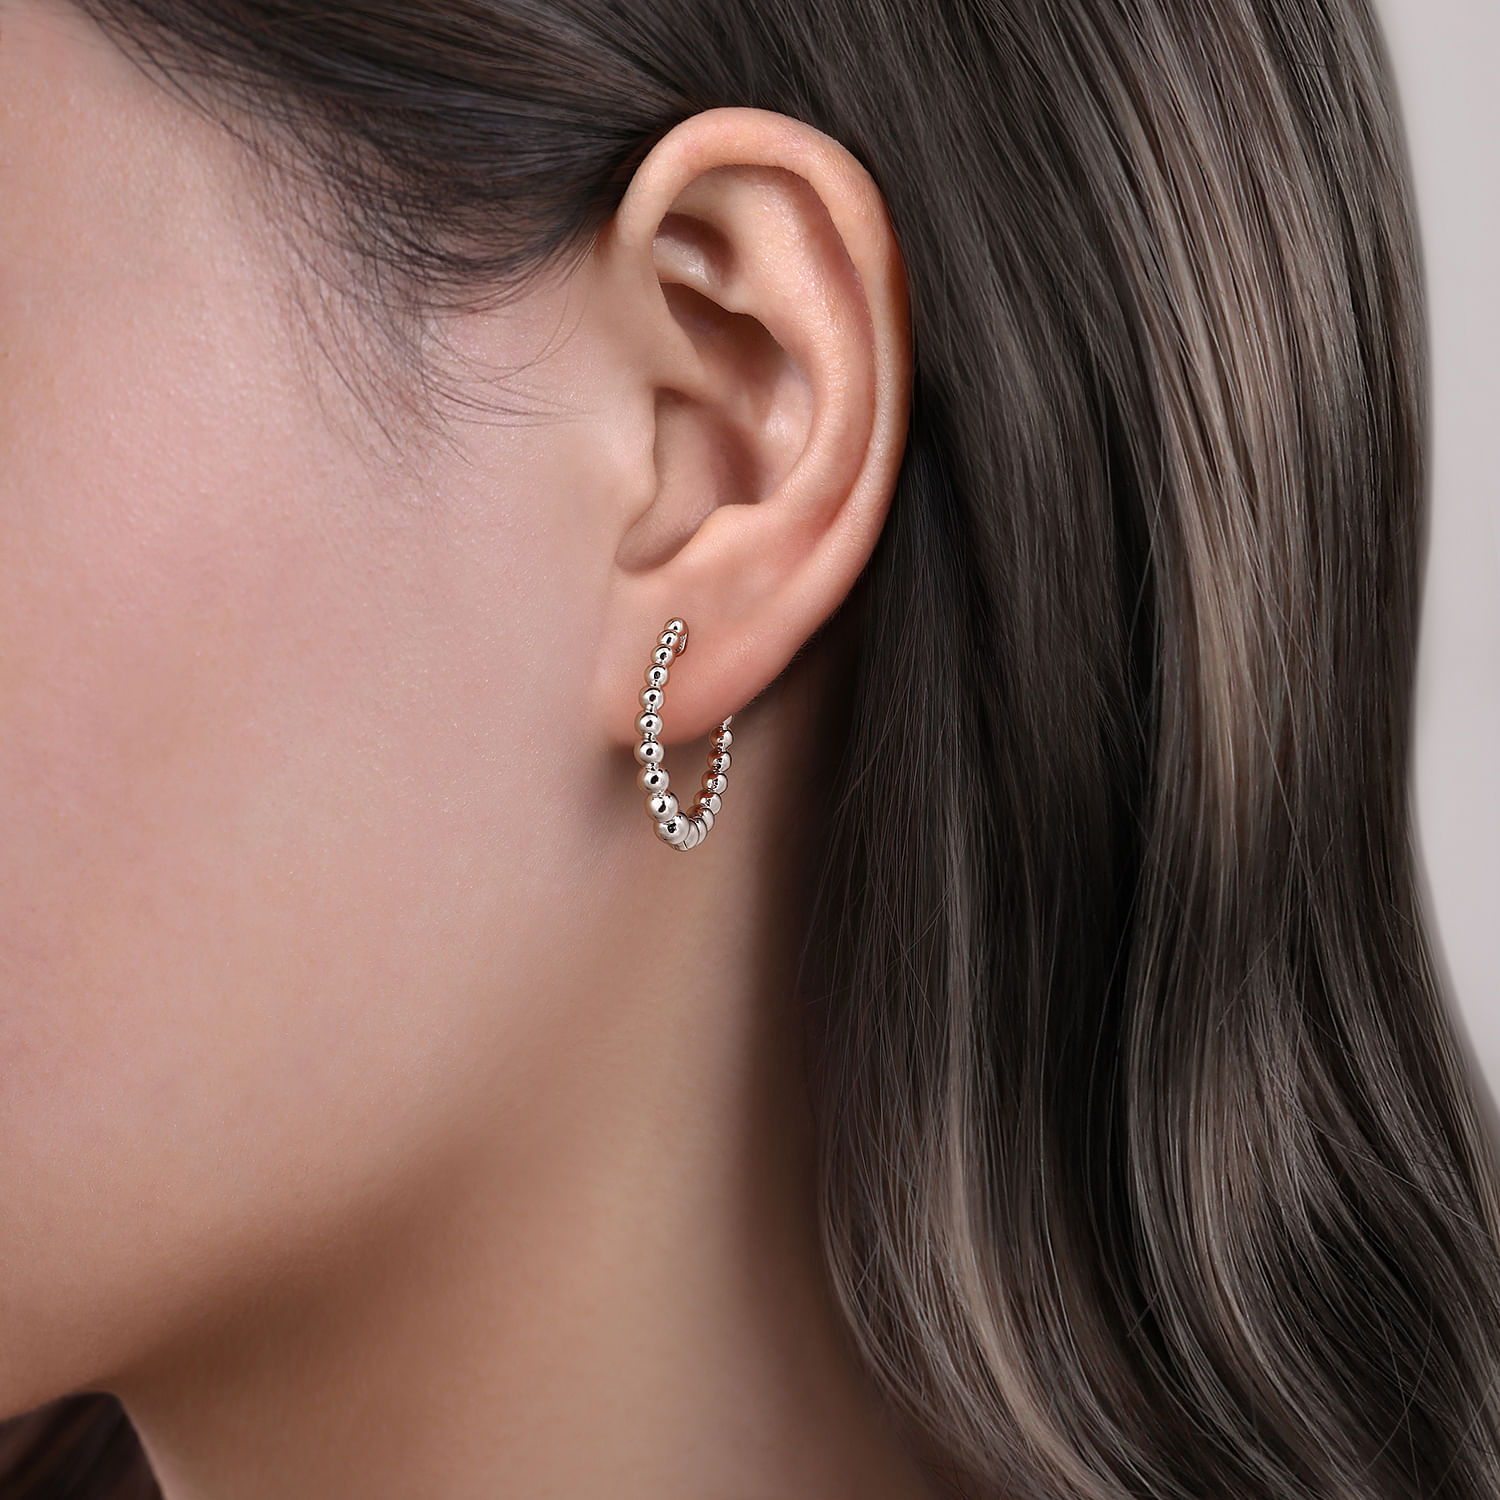 925 Sterling Silver Bujukan Graduated 20mm Classic Hoop Earrings